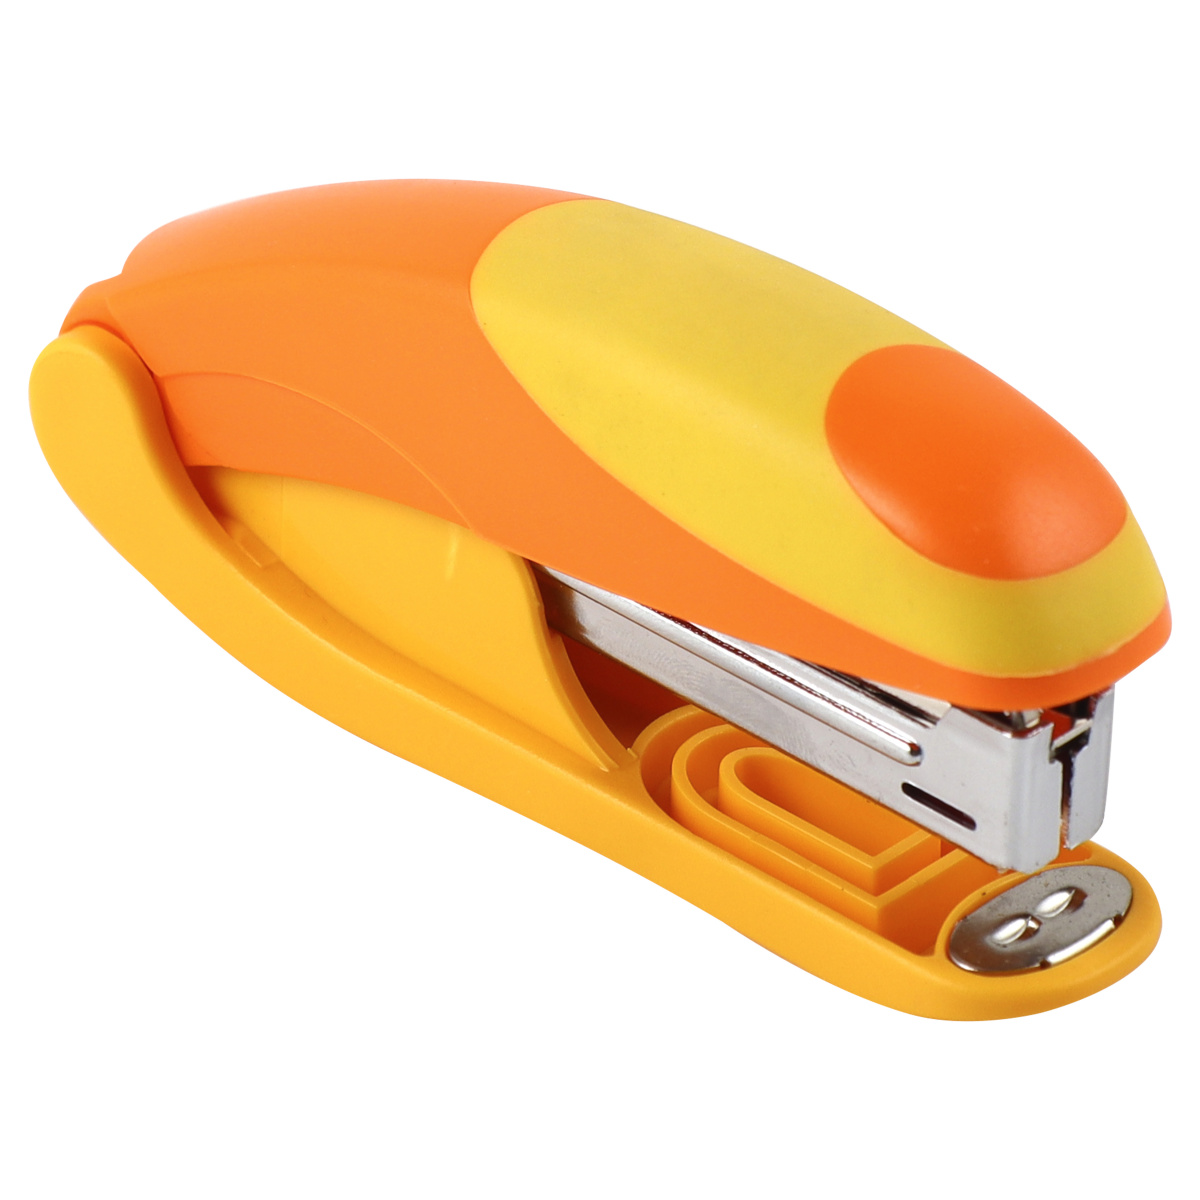 Степлер №24/6 до 20л пластиковый корпус OMAX S5131B 3 режима скрепления желто-оранжевый | Магазин канцтоваров и игрушек Львёнок